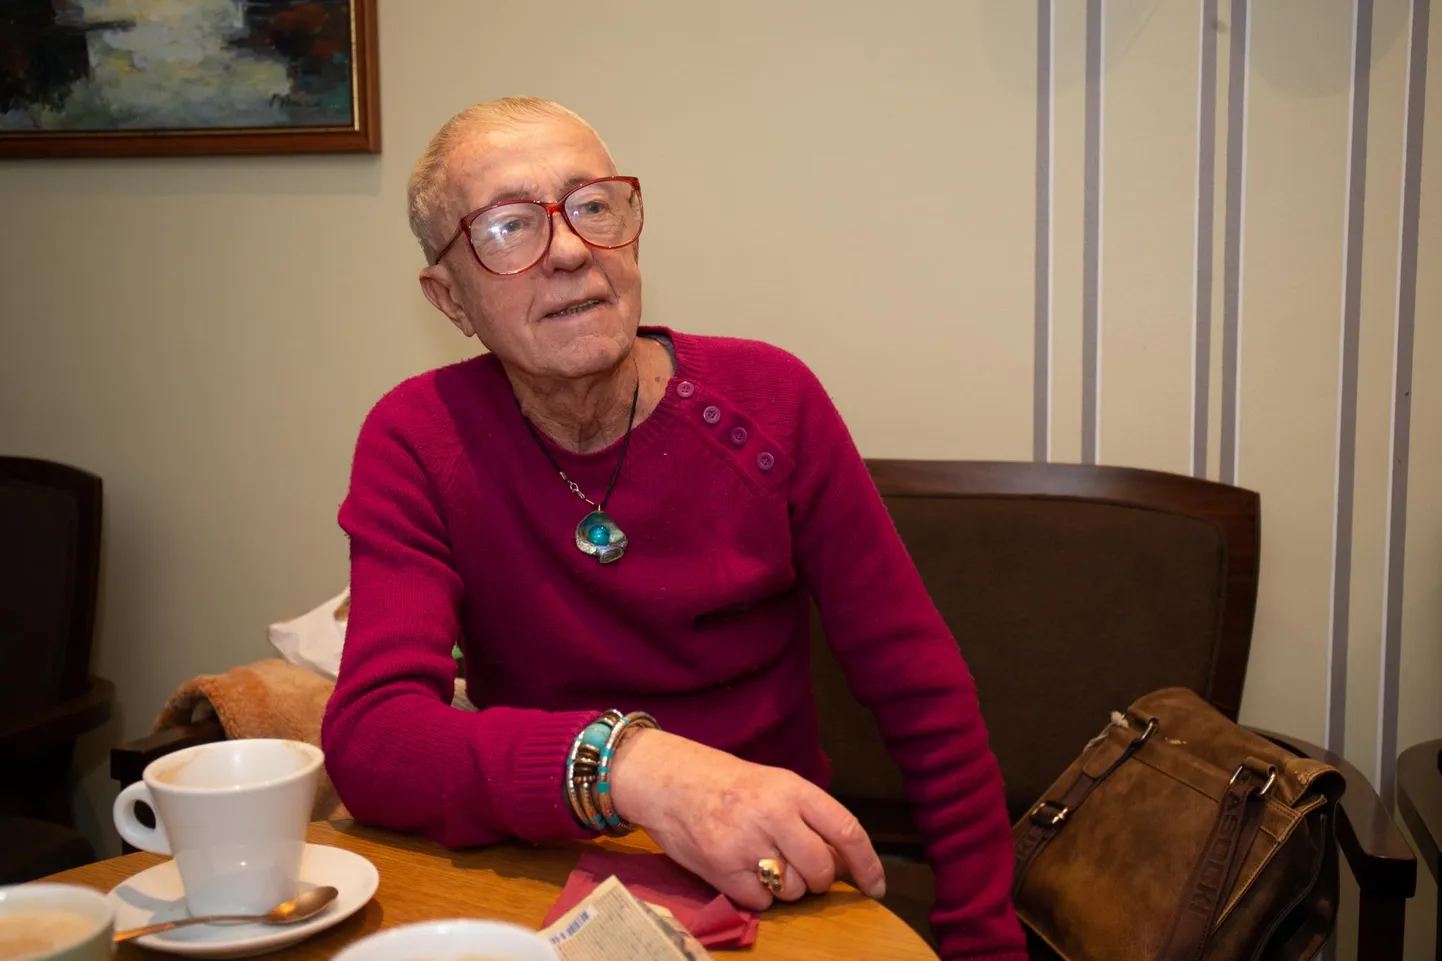 Täna saab 90-aastaseks Kalju Konsin, kes on sündinud 23. jaanuaril 1929 Võõpste külas taluniku peres, lõpetanud Tartu 1. keskkooli ja põllumajandusakadeemia ning töötanud veerand sajandit etnograafiamuuseumis.